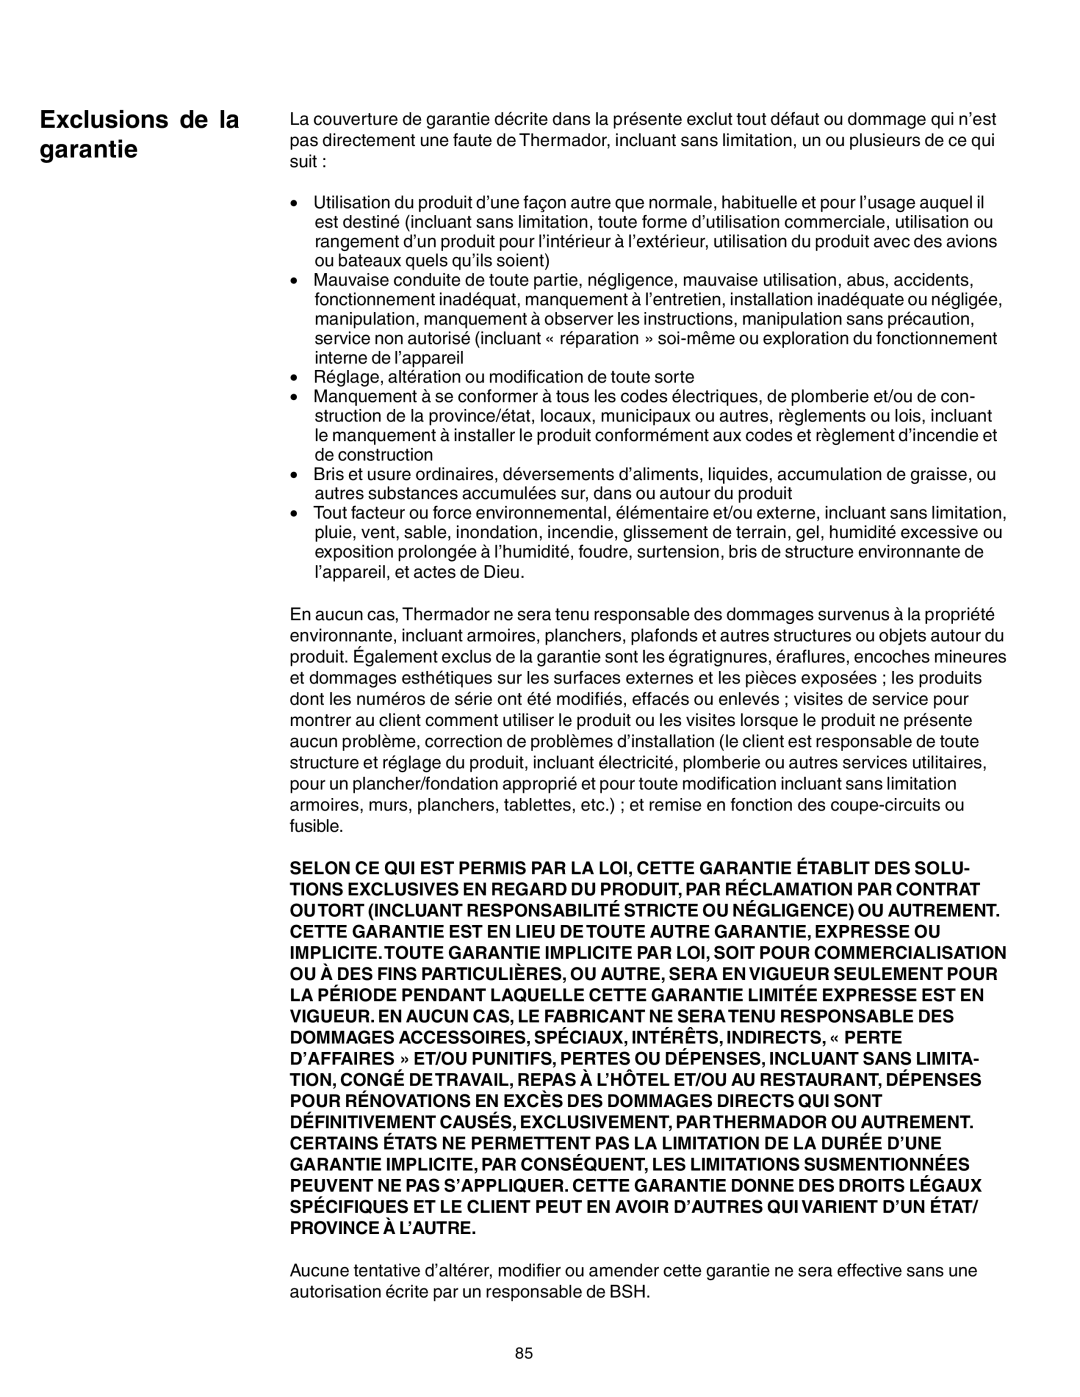 Thermador PG30 manuel dutilisation Exclusions de la garantie 